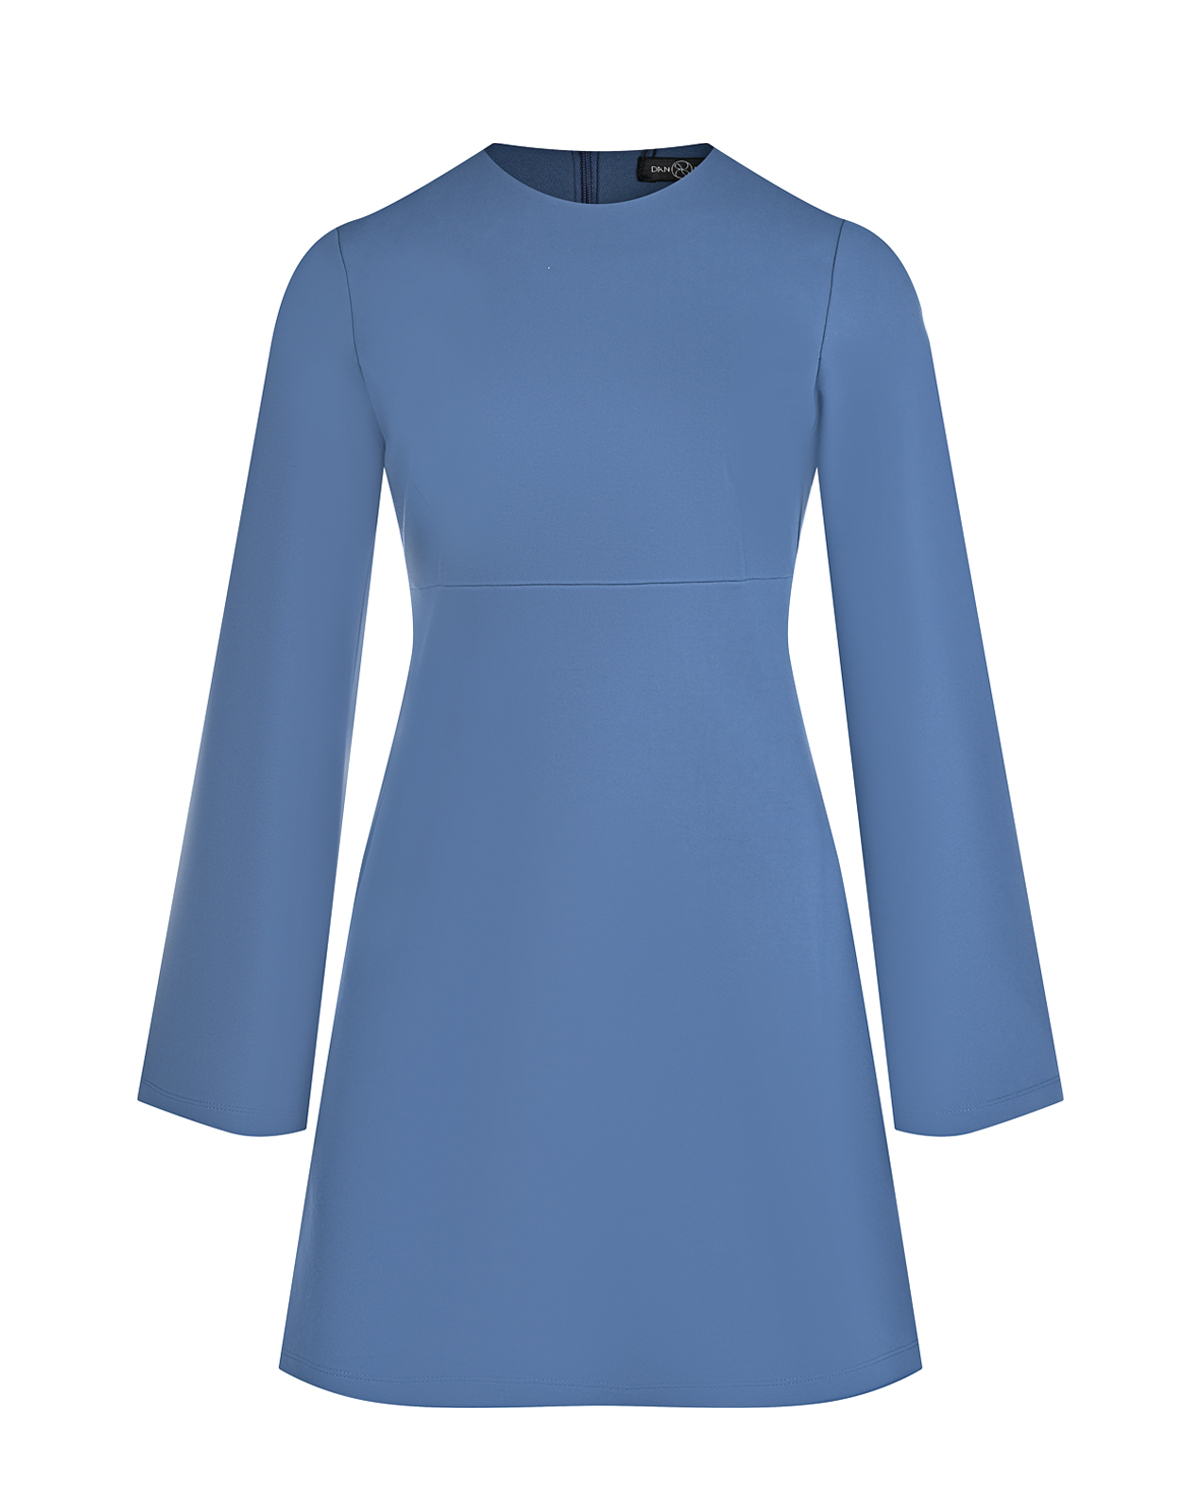 Синее платье с рукавами клеш Dan Maralex, размер 42, цвет синий